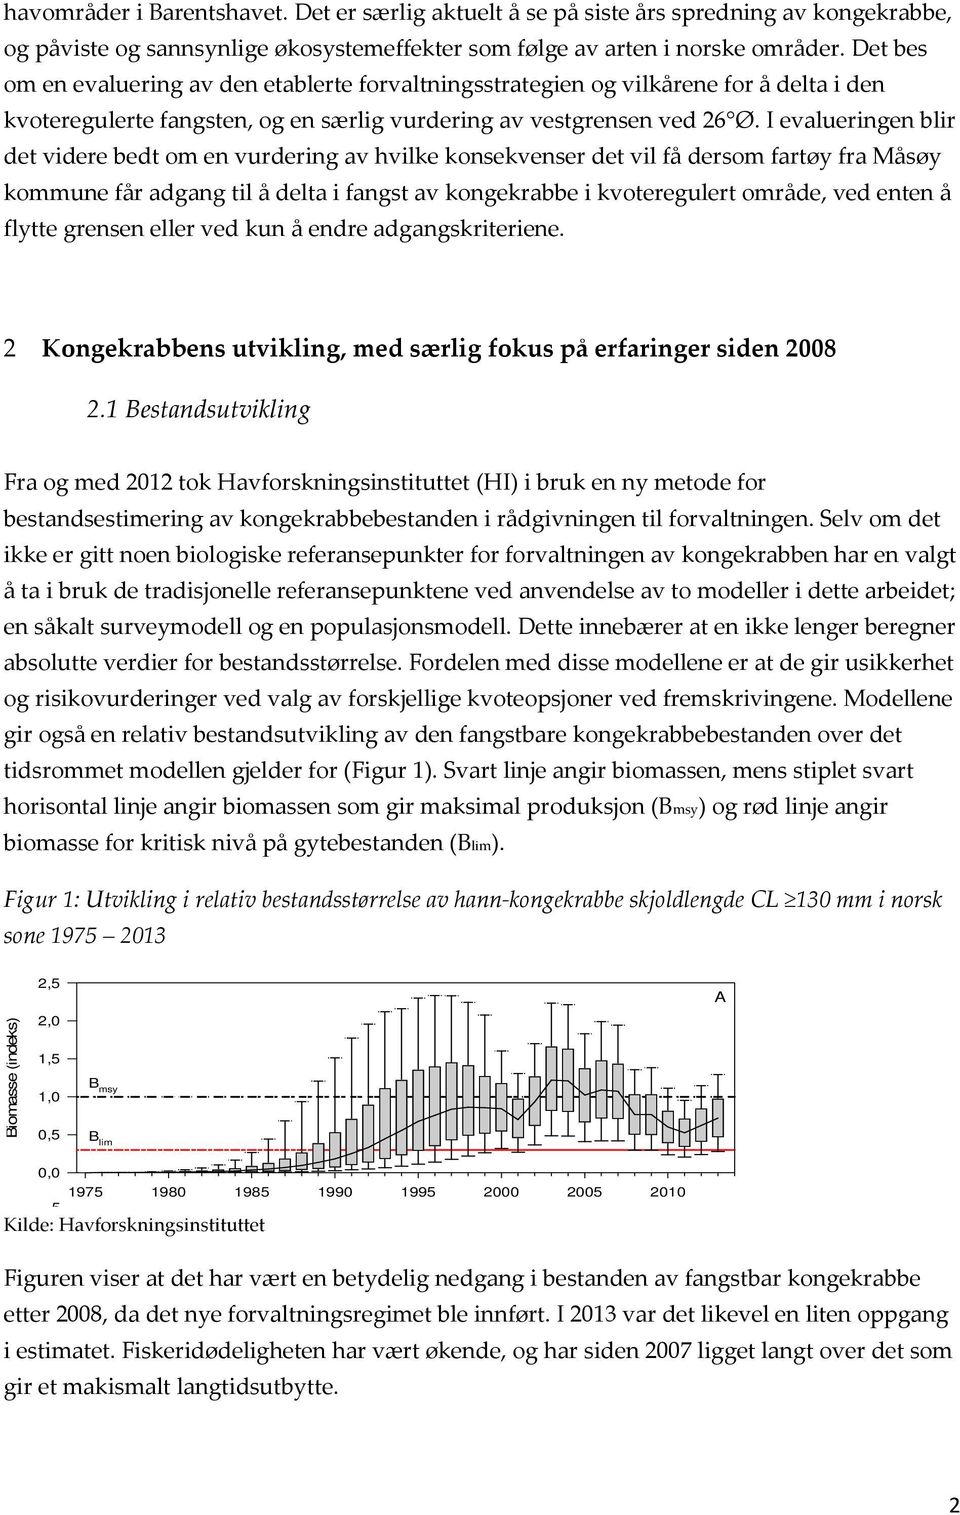 I evalueringen blir det videre bedt om en vurdering av hvilke konsekvenser det vil få dersom fartøy fra Måsøy kommune får adgang til å delta i fangst av kongekrabbe i kvoteregulert område, ved enten